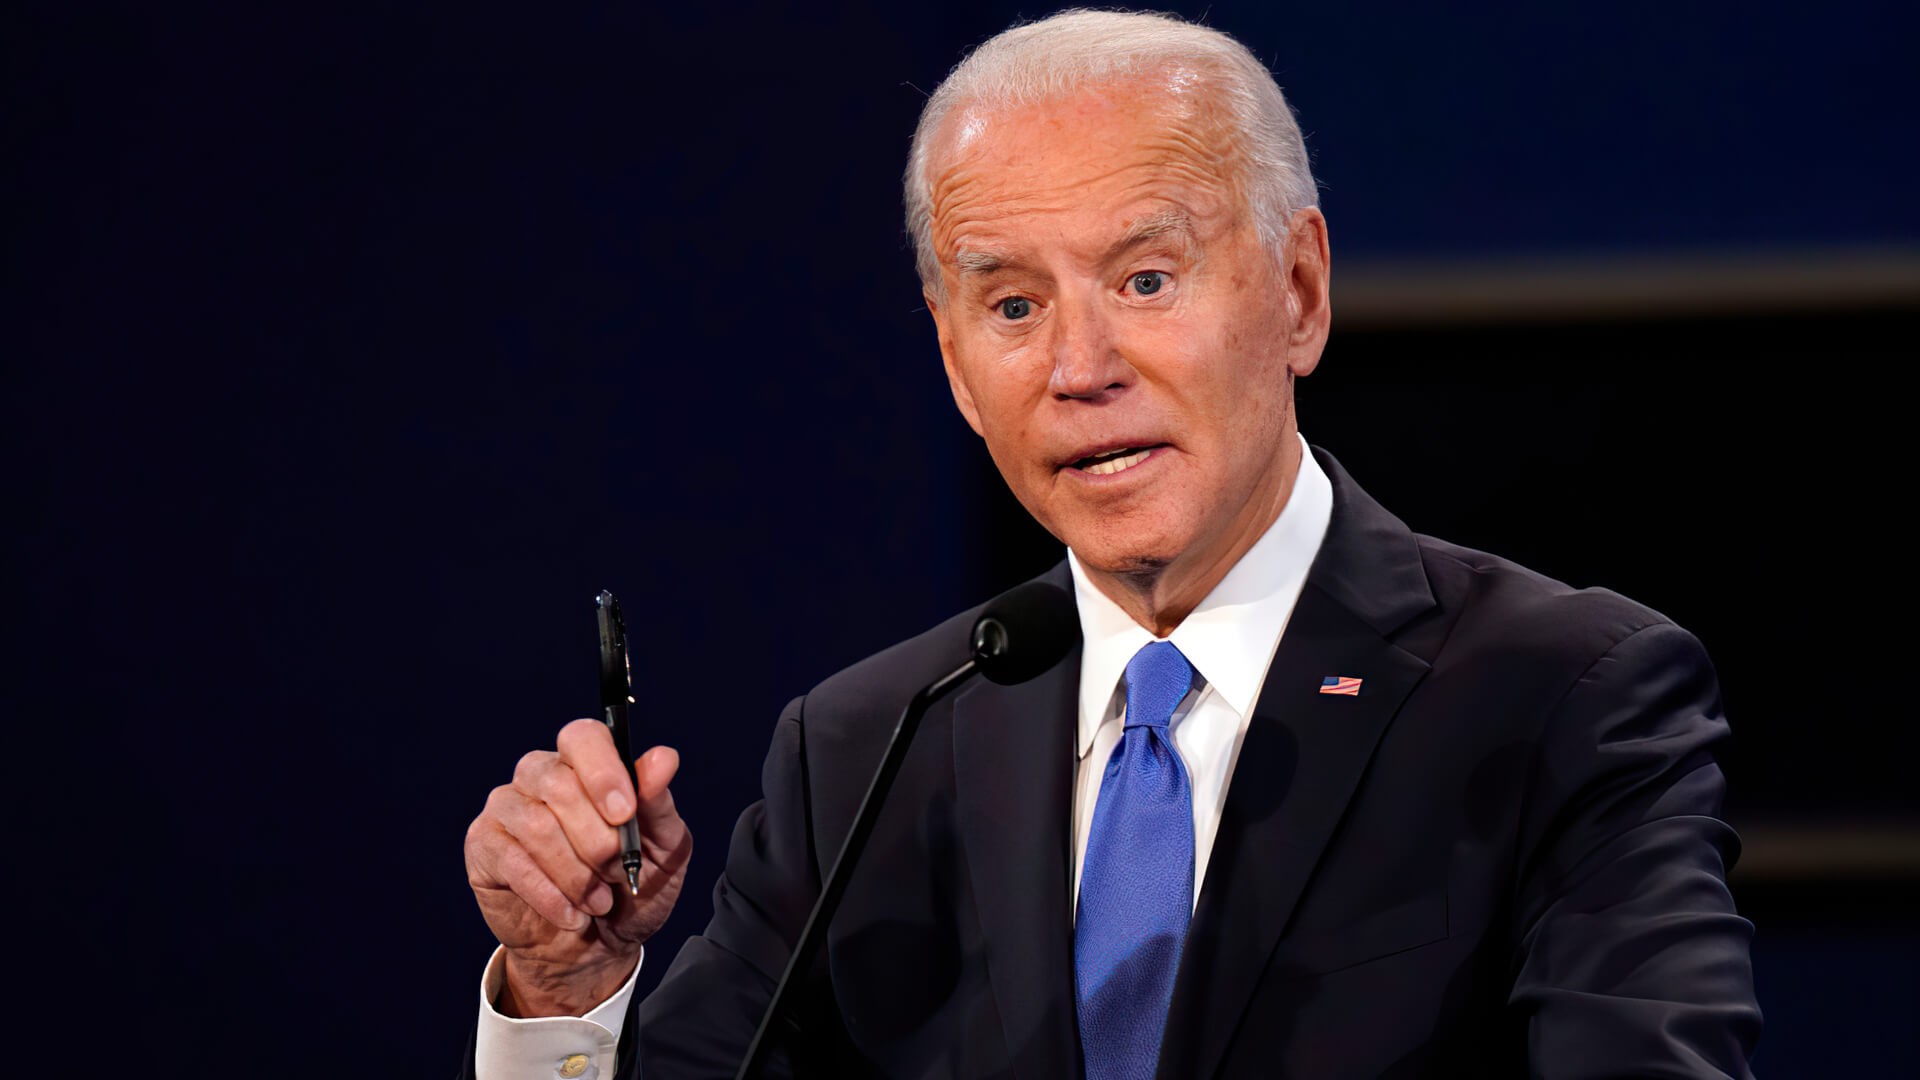 Joe Biden during the Presidential Debate in October